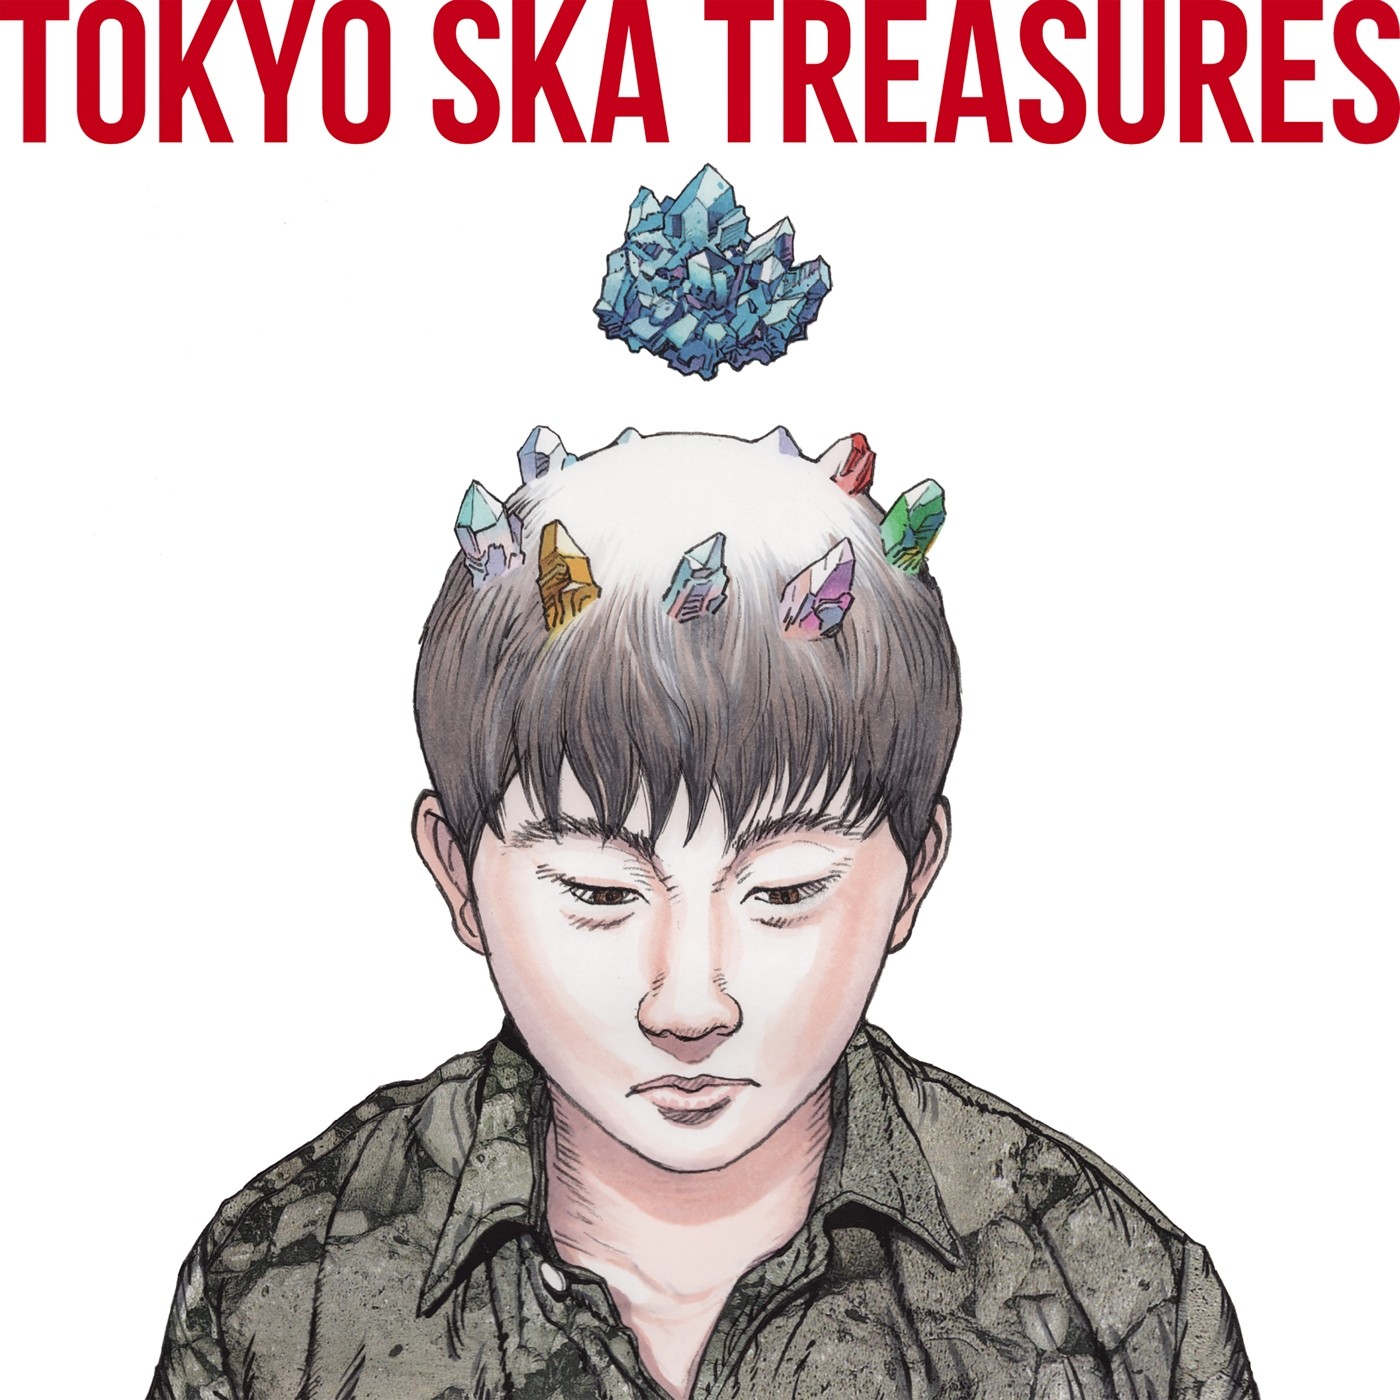 東京スカパラダイスオーケストラ (Tokyo Ska Paradise Orchestra) – TOKYO SKA TREASURES ~ベスト・オブ・東京スカパラダイスオーケストラ~ [FLAC + MP3 320 / WEB] [2020.03.18]